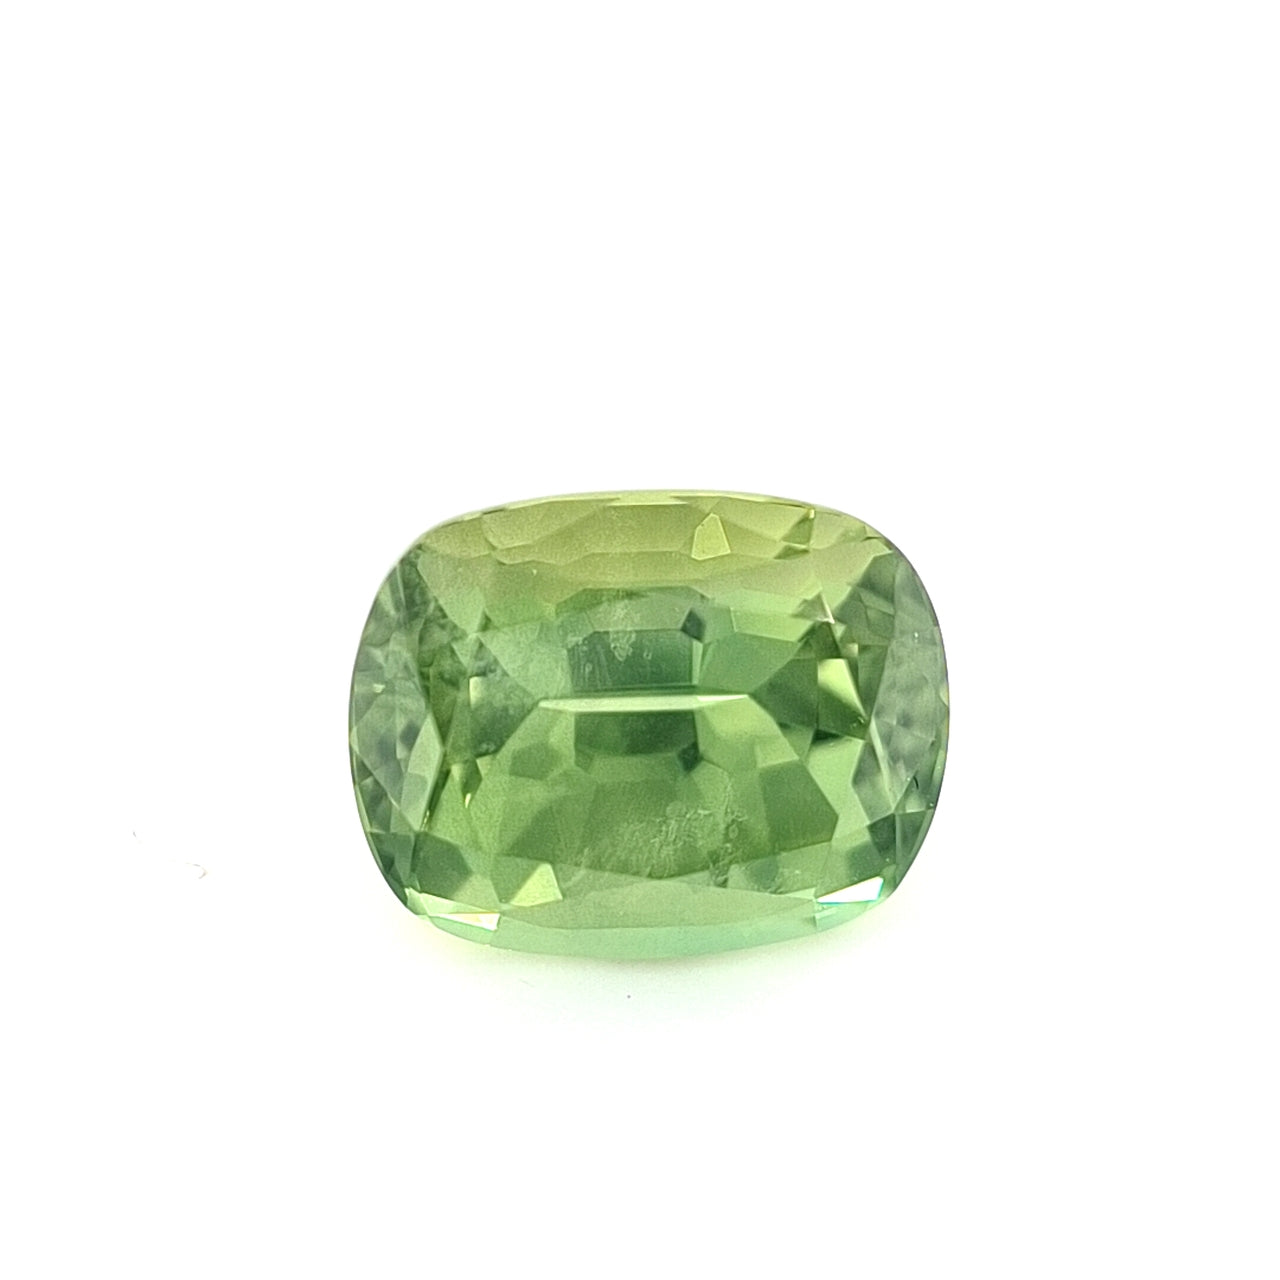 2.17ct Australian Sapphire, Apple Green - Cushion Cut